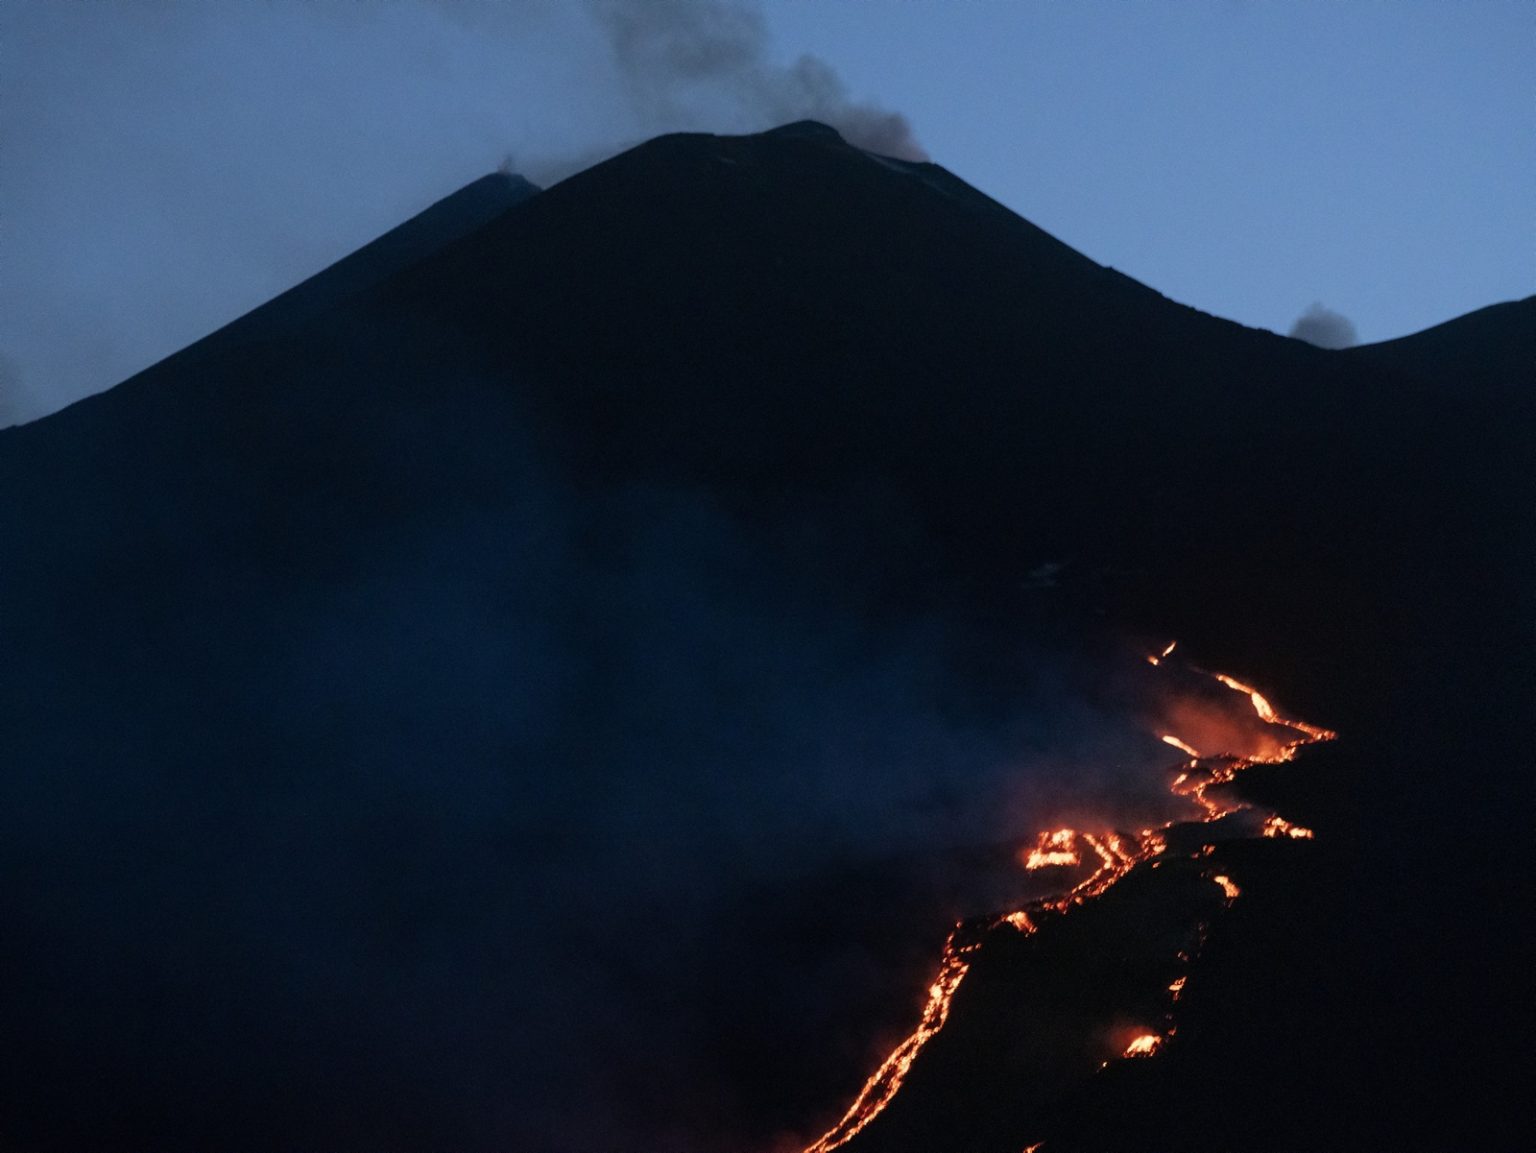 Mount Etna, Sicily, June 2022 - Valle del Bove: eruption of the volcano ><
Etna, Sicilia, giugno 2022 - Valle del Bove, eruzione del vulcano.